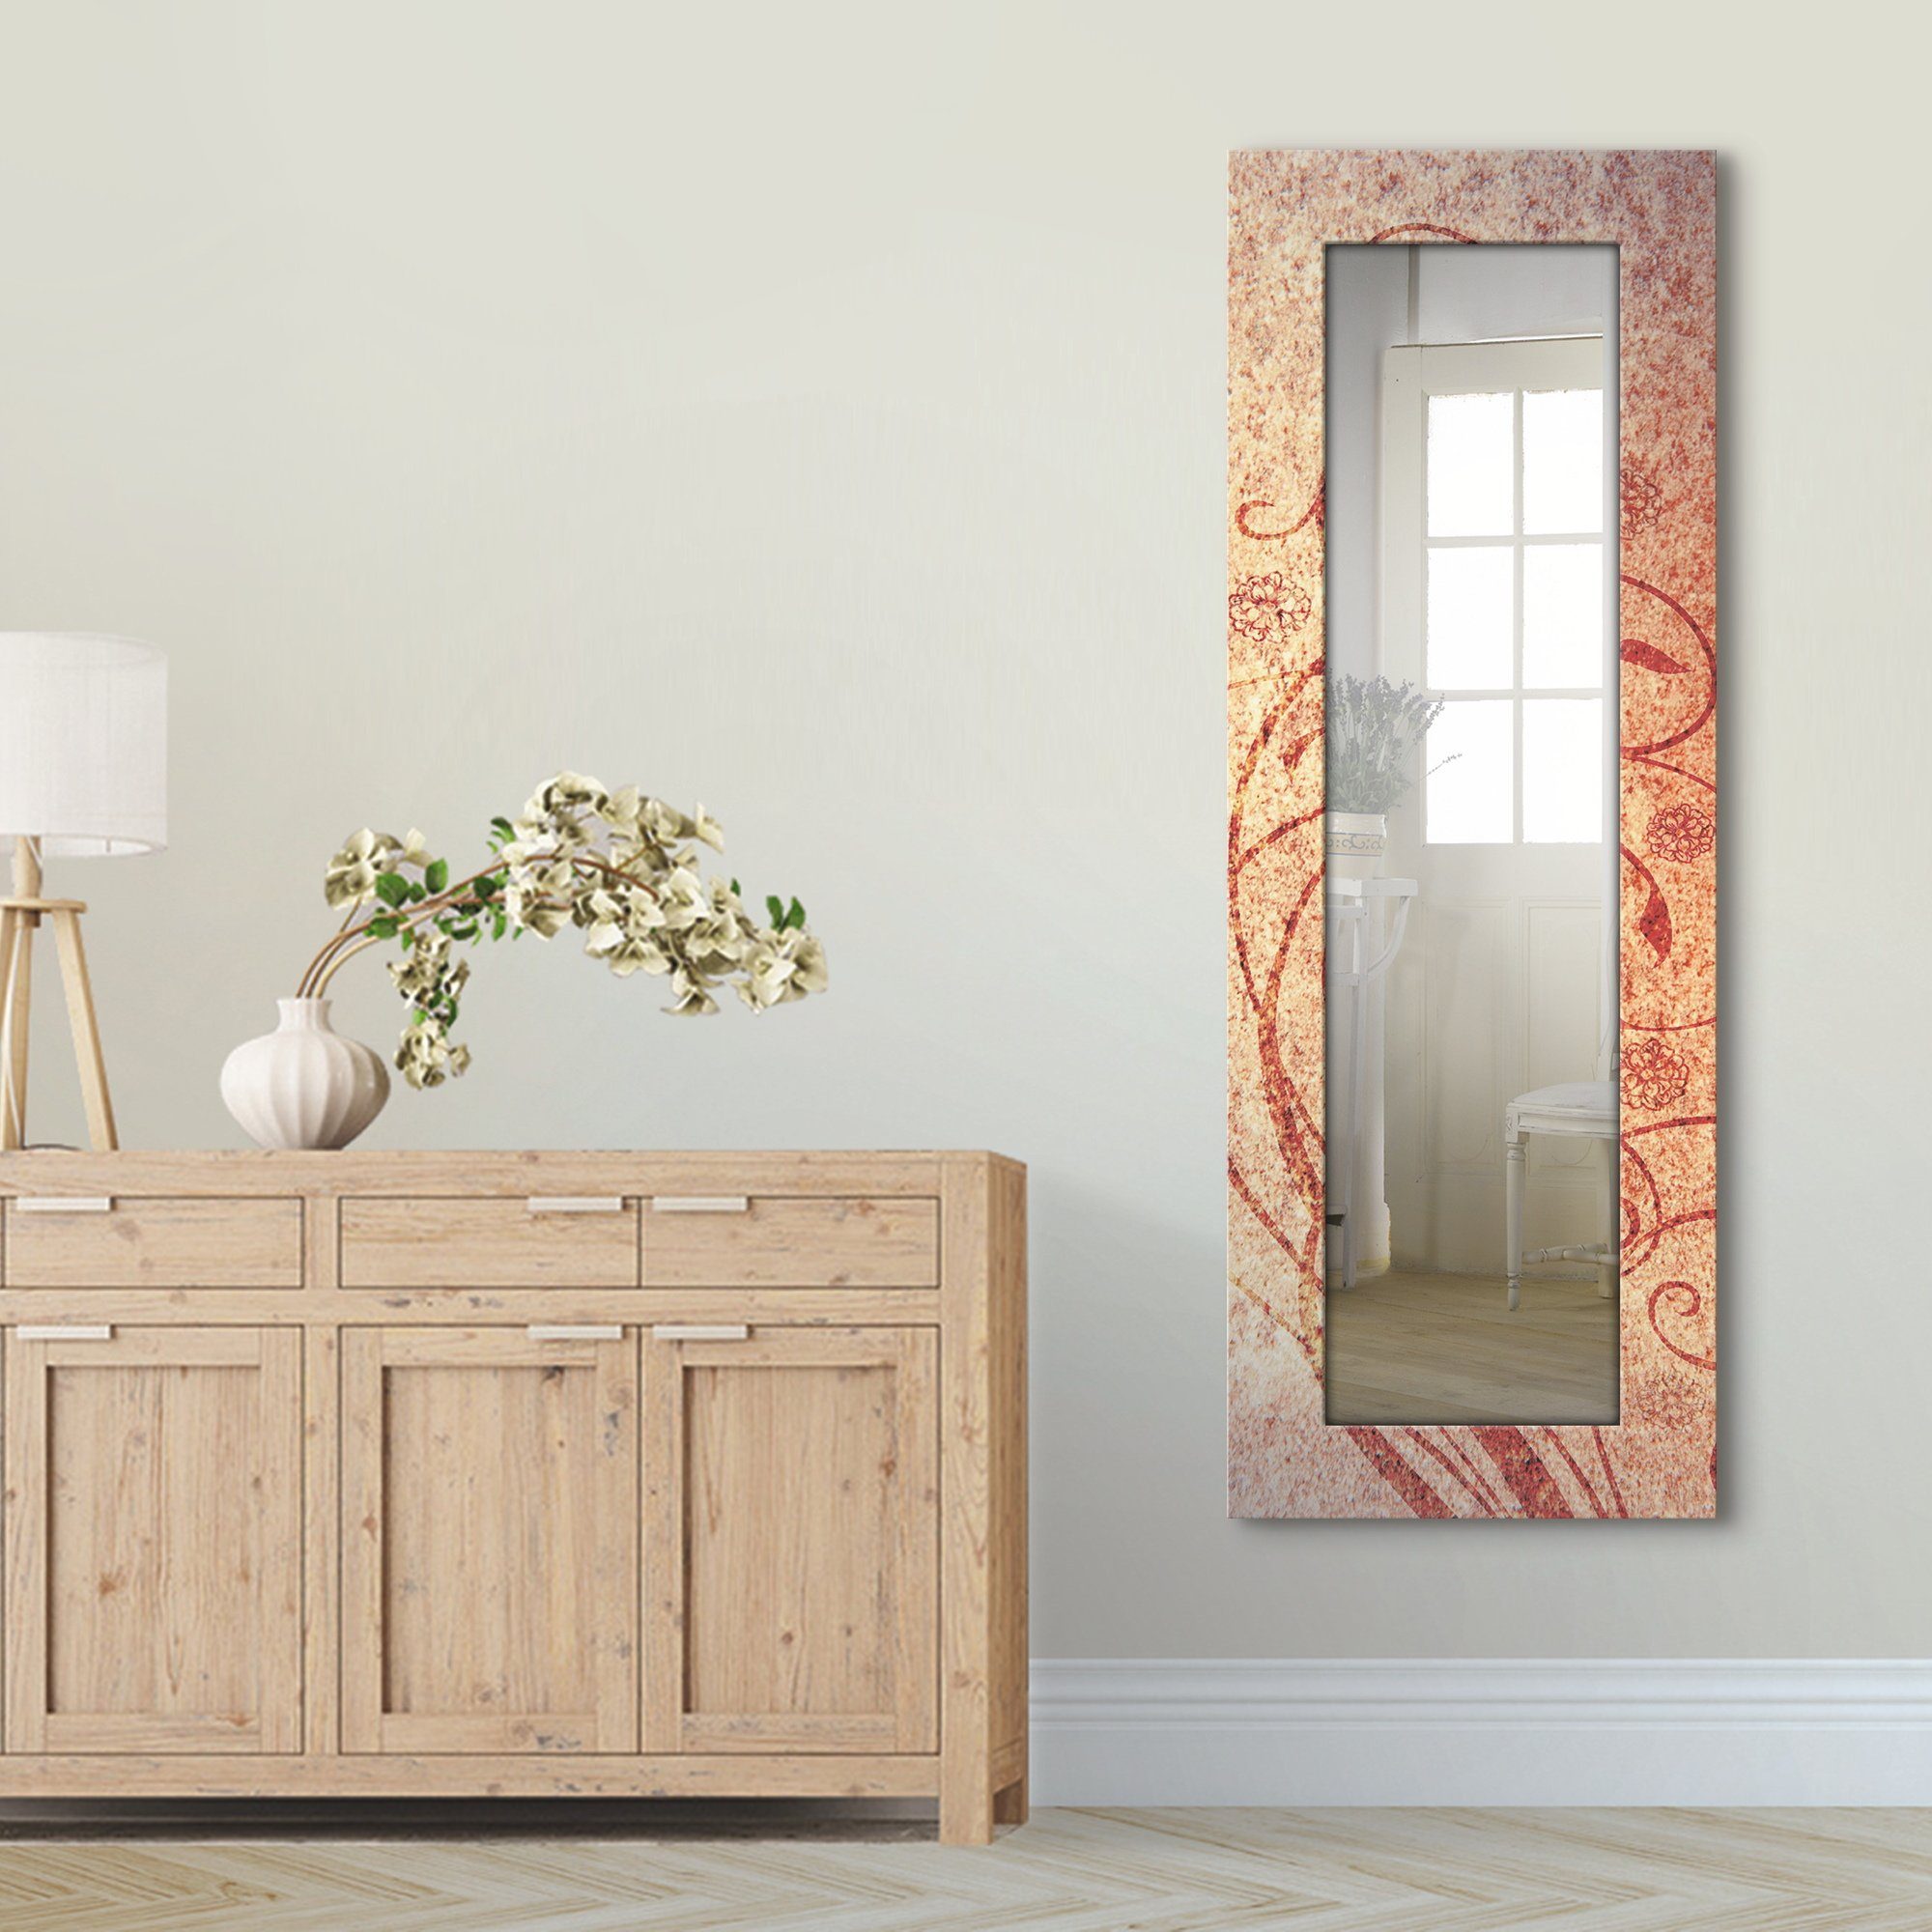 Artland Dekospiegel Florale Ornamente, gerahmter Ganzkörperspiegel, Wandspiegel, mit Motivrahmen, Landhaus | Dekospiegel